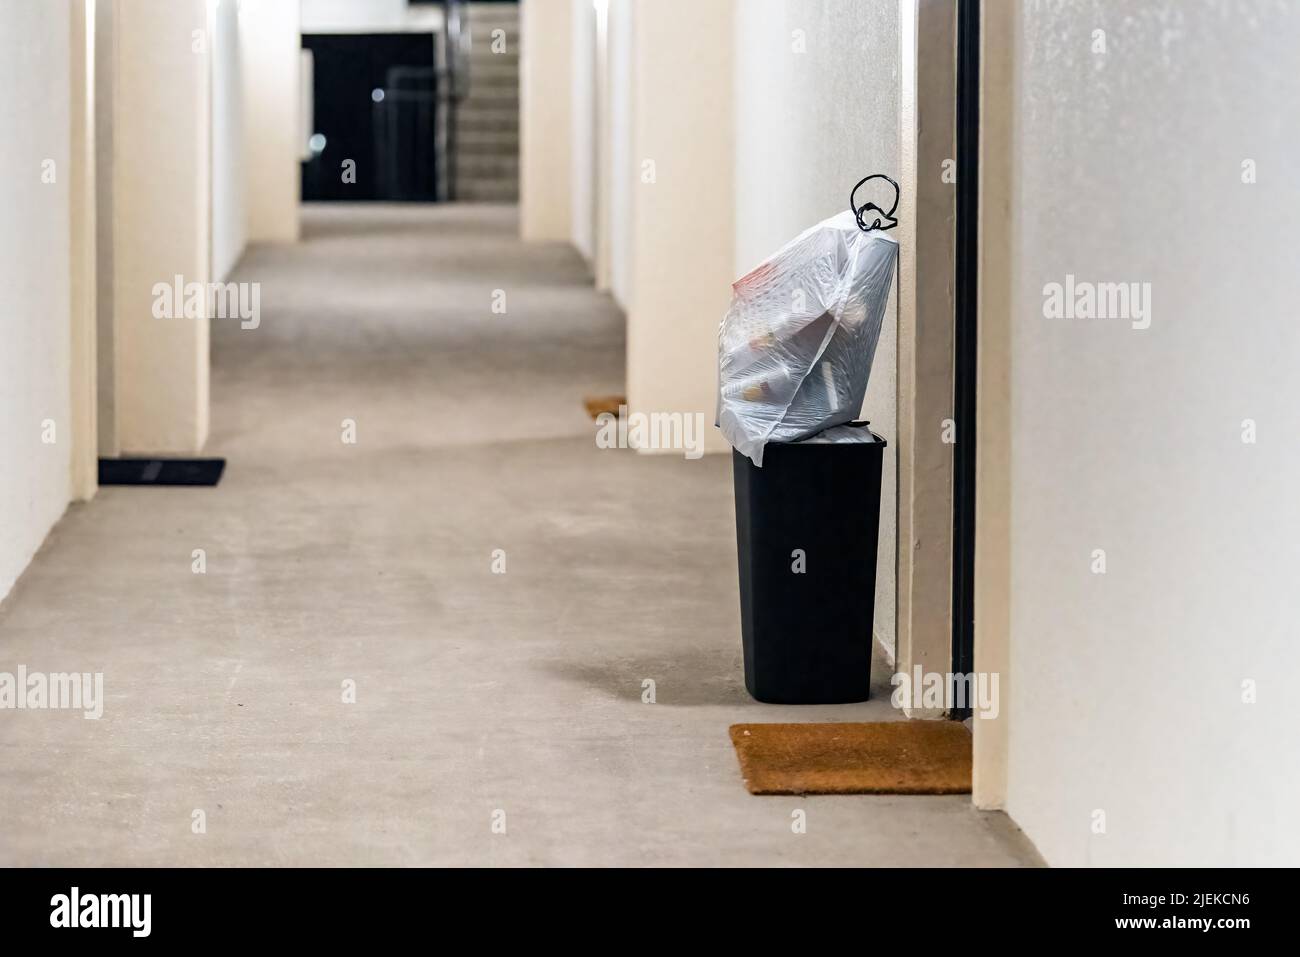 Service de ramassage des ordures de porte à porte de concierge pour les appartements avec les ordures dans le bac et les sacs en plastique pour ramasser dans le couloir du bâtiment résidentiel Banque D'Images